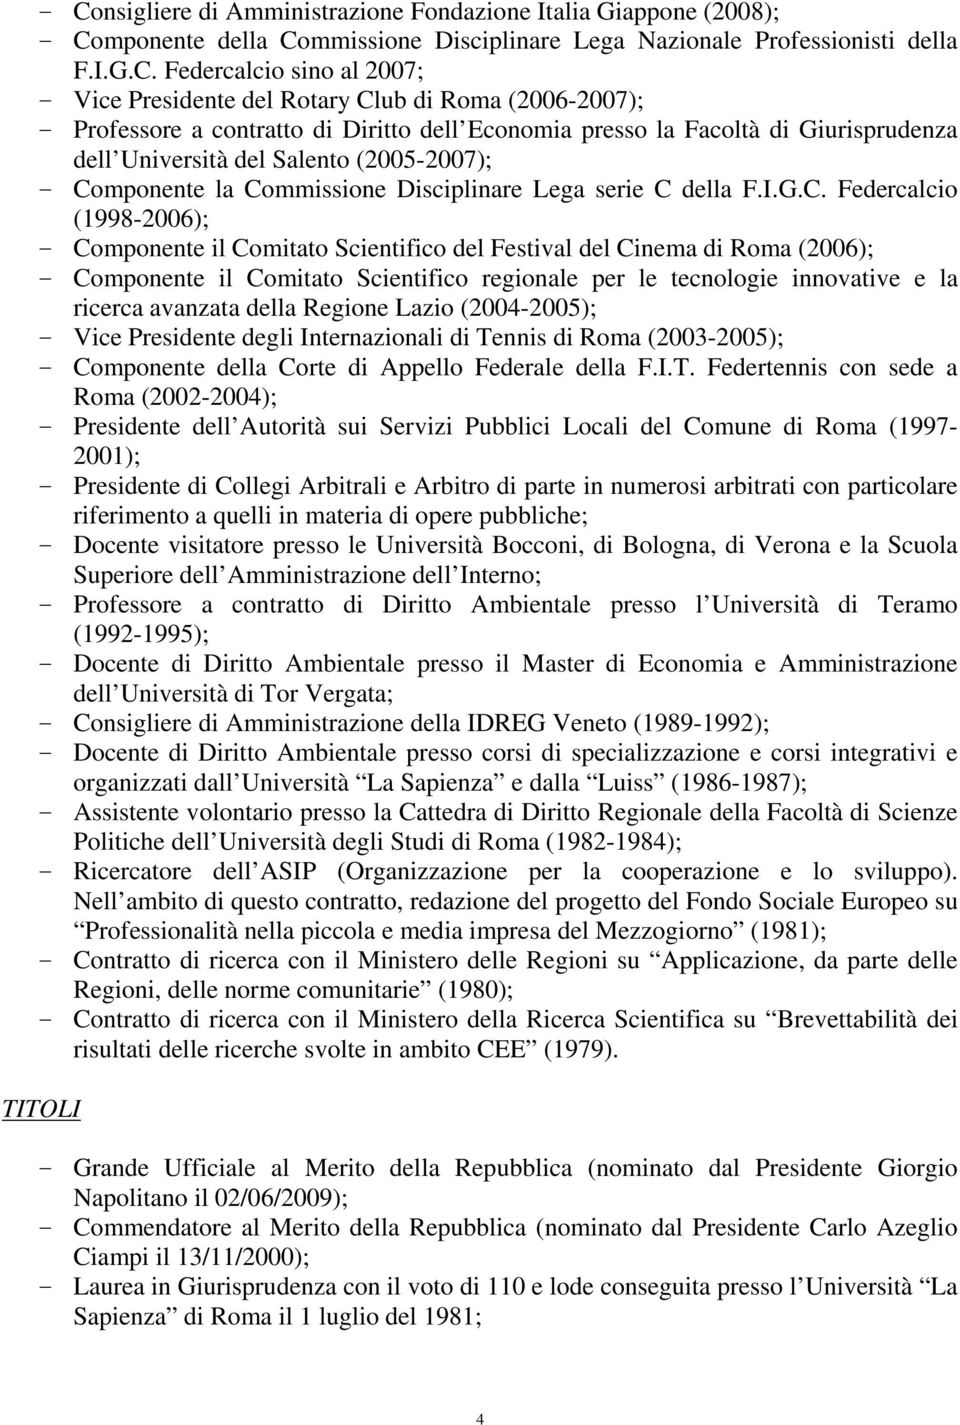 Commissione Disciplinare Lega serie C della F.I.G.C. Federcalcio (1998-2006); - Componente il Comitato Scientifico del Festival del Cinema di Roma (2006); - Componente il Comitato Scientifico